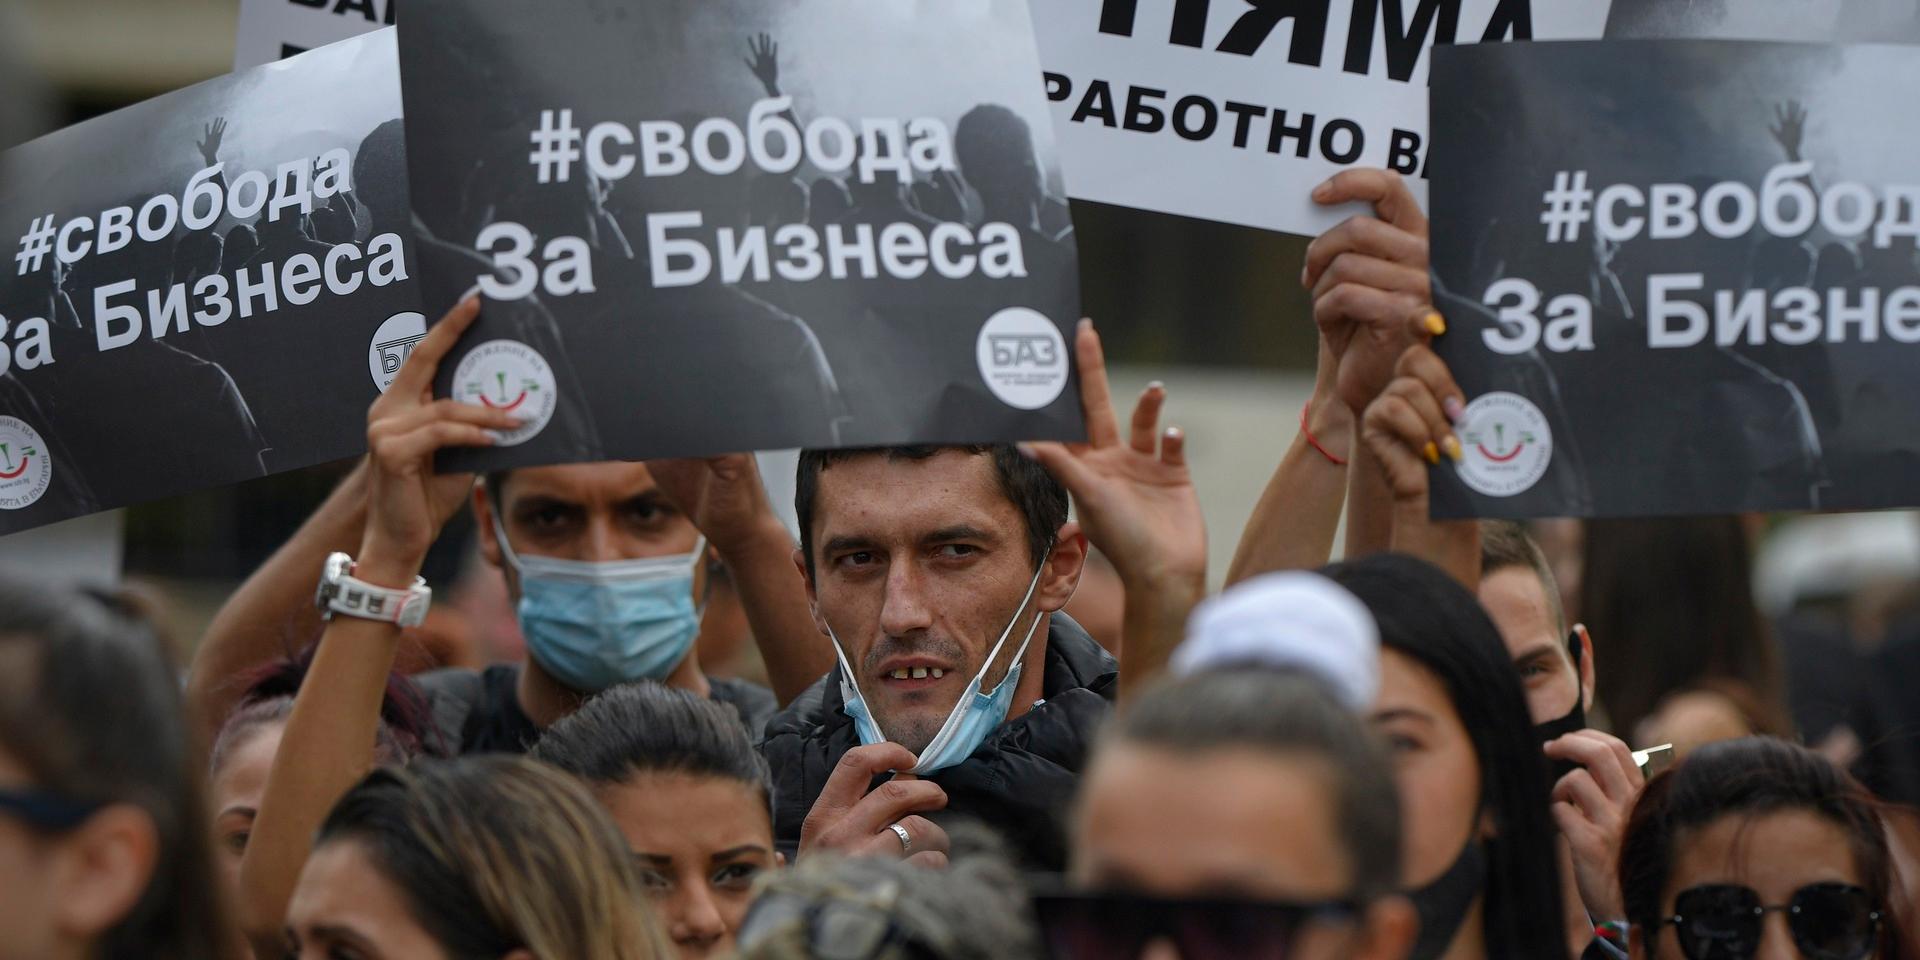 Demonstranter håller upp plakat med texten ”frihet för företag” och ”covid-19 finns inte” under en demonstration i Veliko Tarnovo, Bulgarien i september.